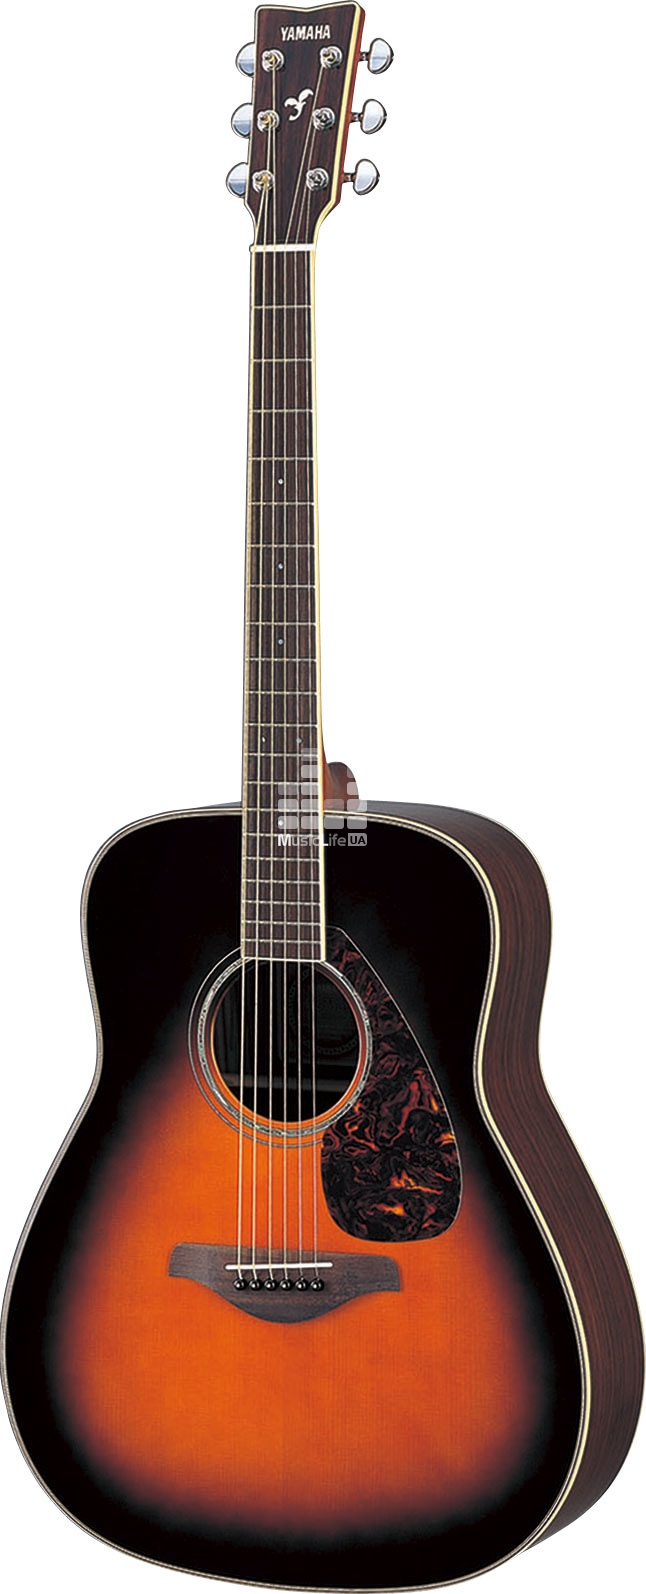 Акустическая гитара Yamaha FG-730S2TBS(Tobacco Brown Sunburst)